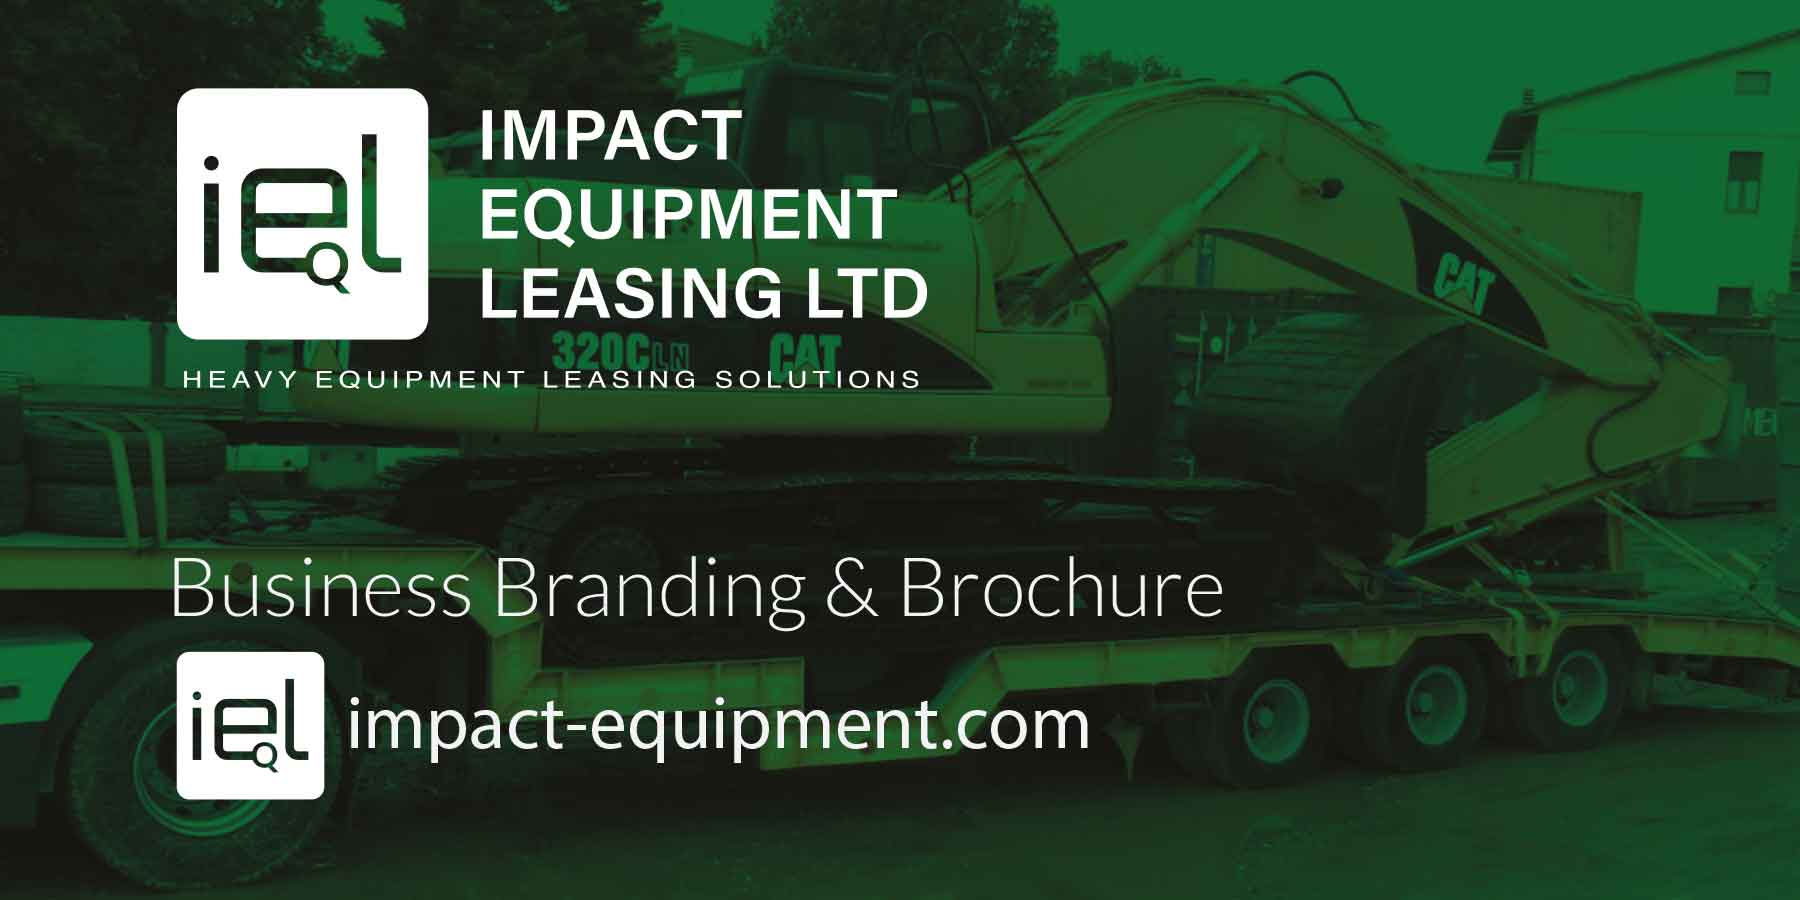 Impact Equipment Leasing Ltd